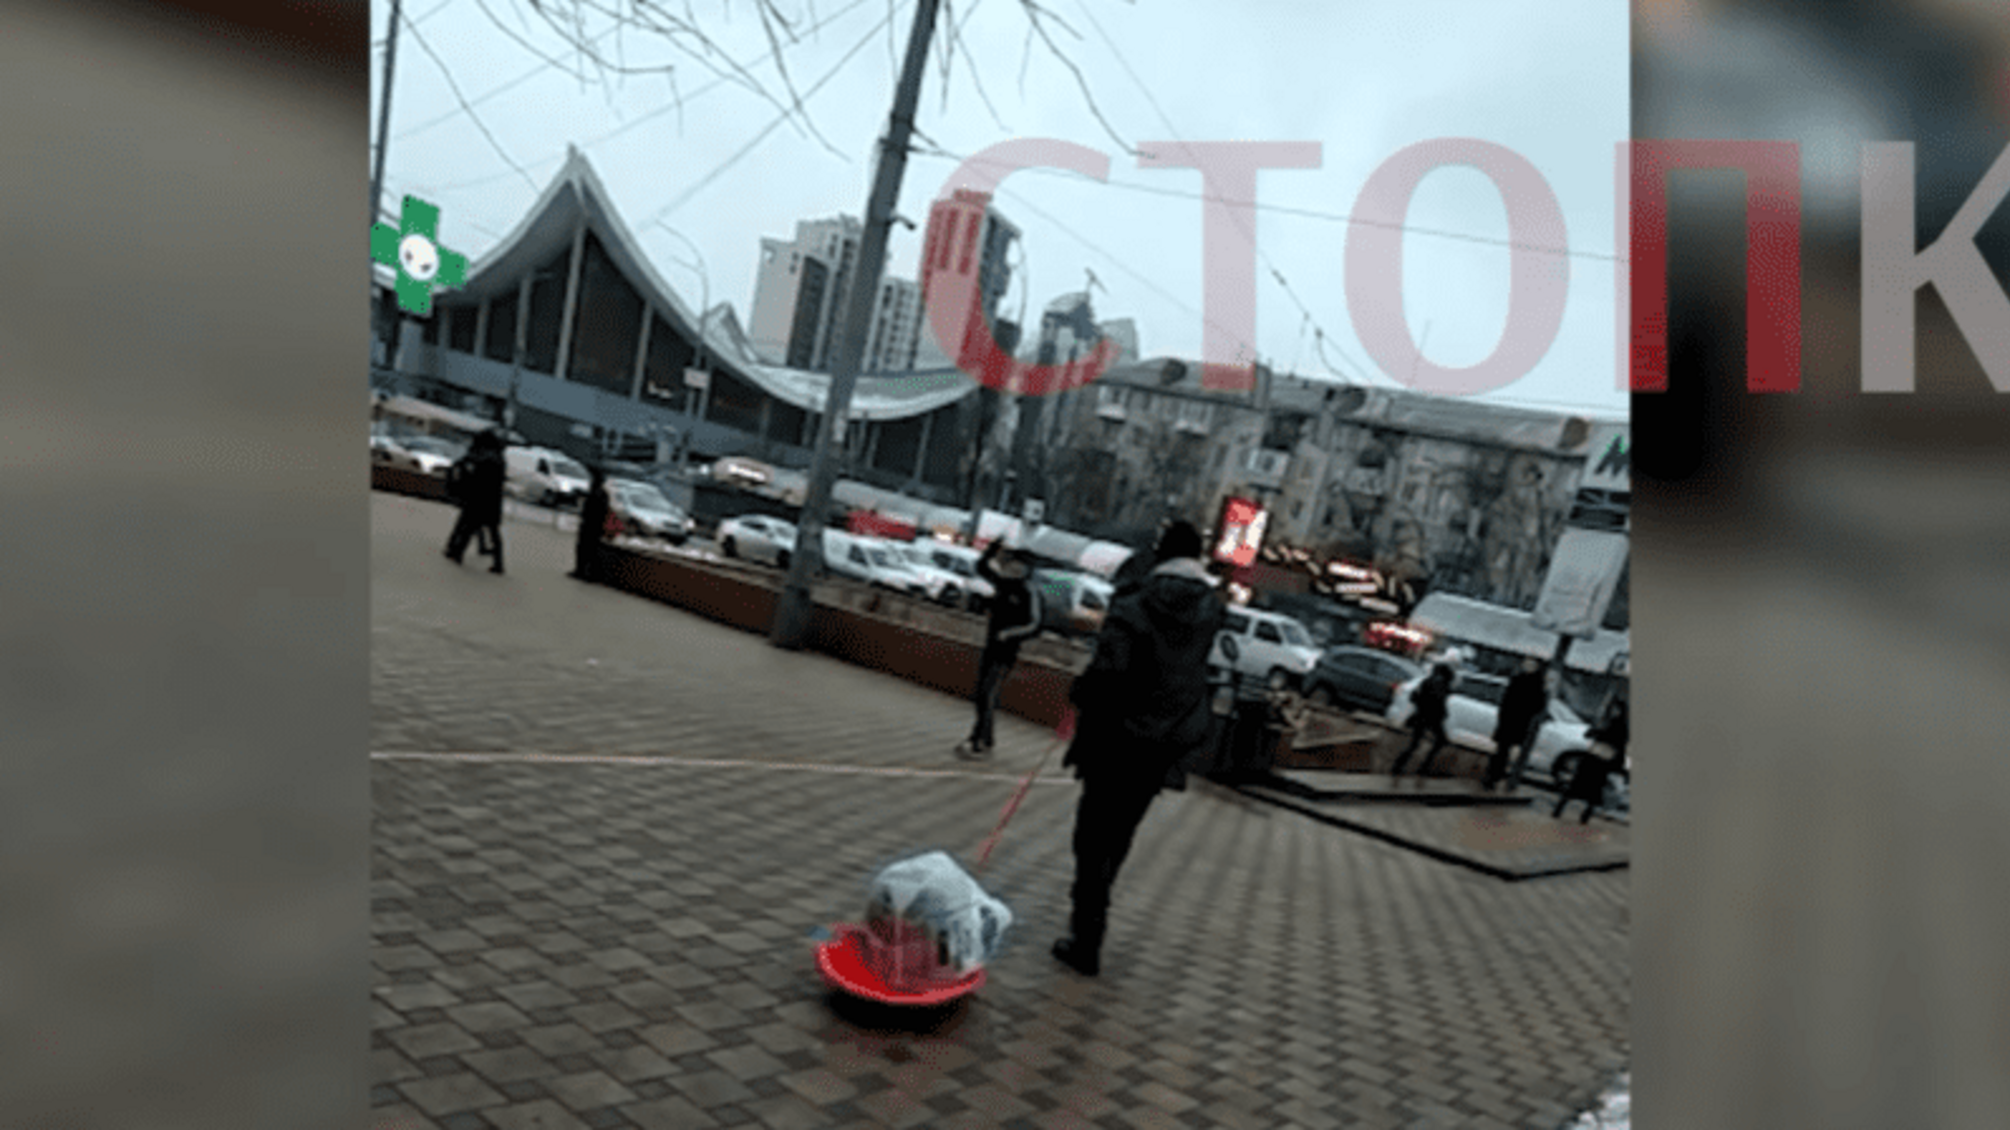 Махав ножами й агресивно поводився: у центрі Києва затримали неадекватного чоловіка (фото, відео)